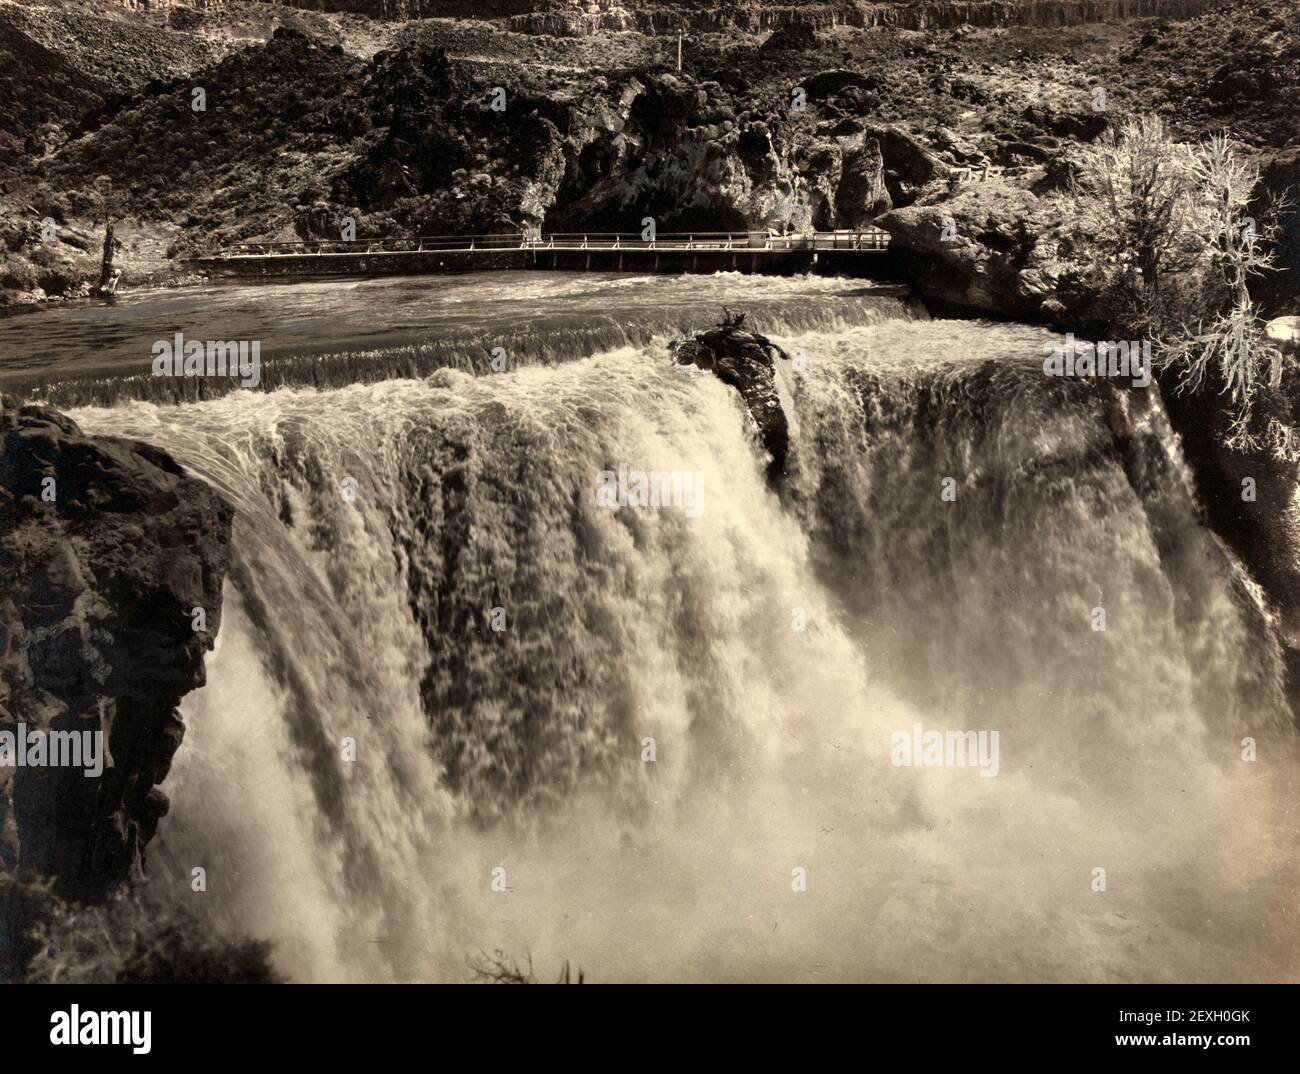 Der Brautschleier - Shoshone Falls - Foto zeigt Nebel, der an den Shoshone Falls aufsteigt, auch Staumauer am Fluss über den Wasserfällen - Clarence Bisbee, um 1920 Stockfoto